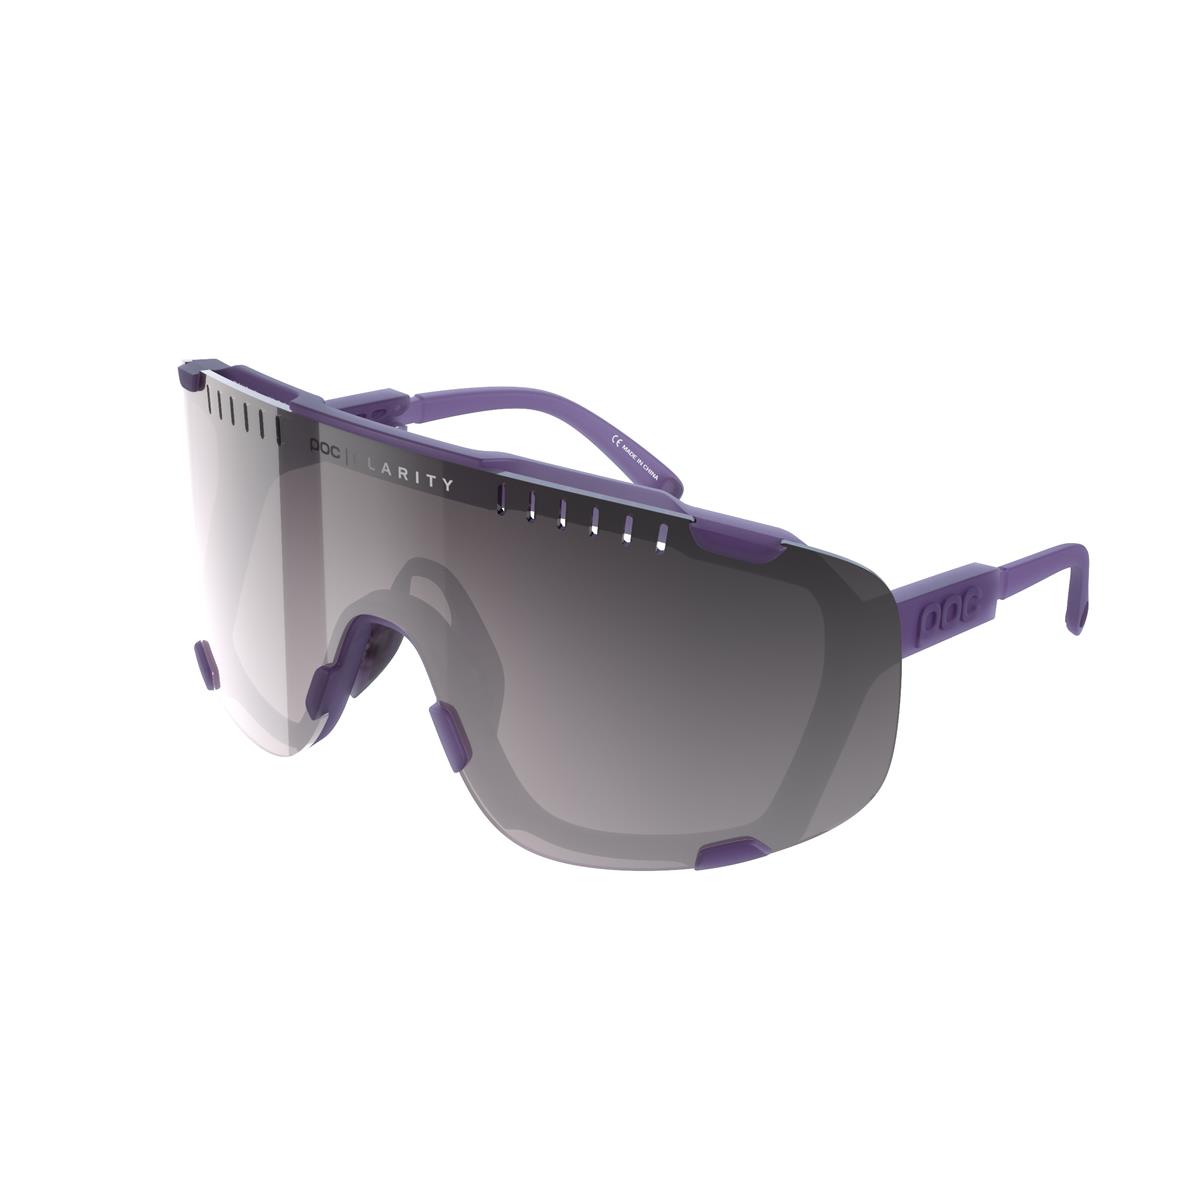 Devour Sunglesses Sapphire Purple Translucent Lens Violet/Silver Mirror